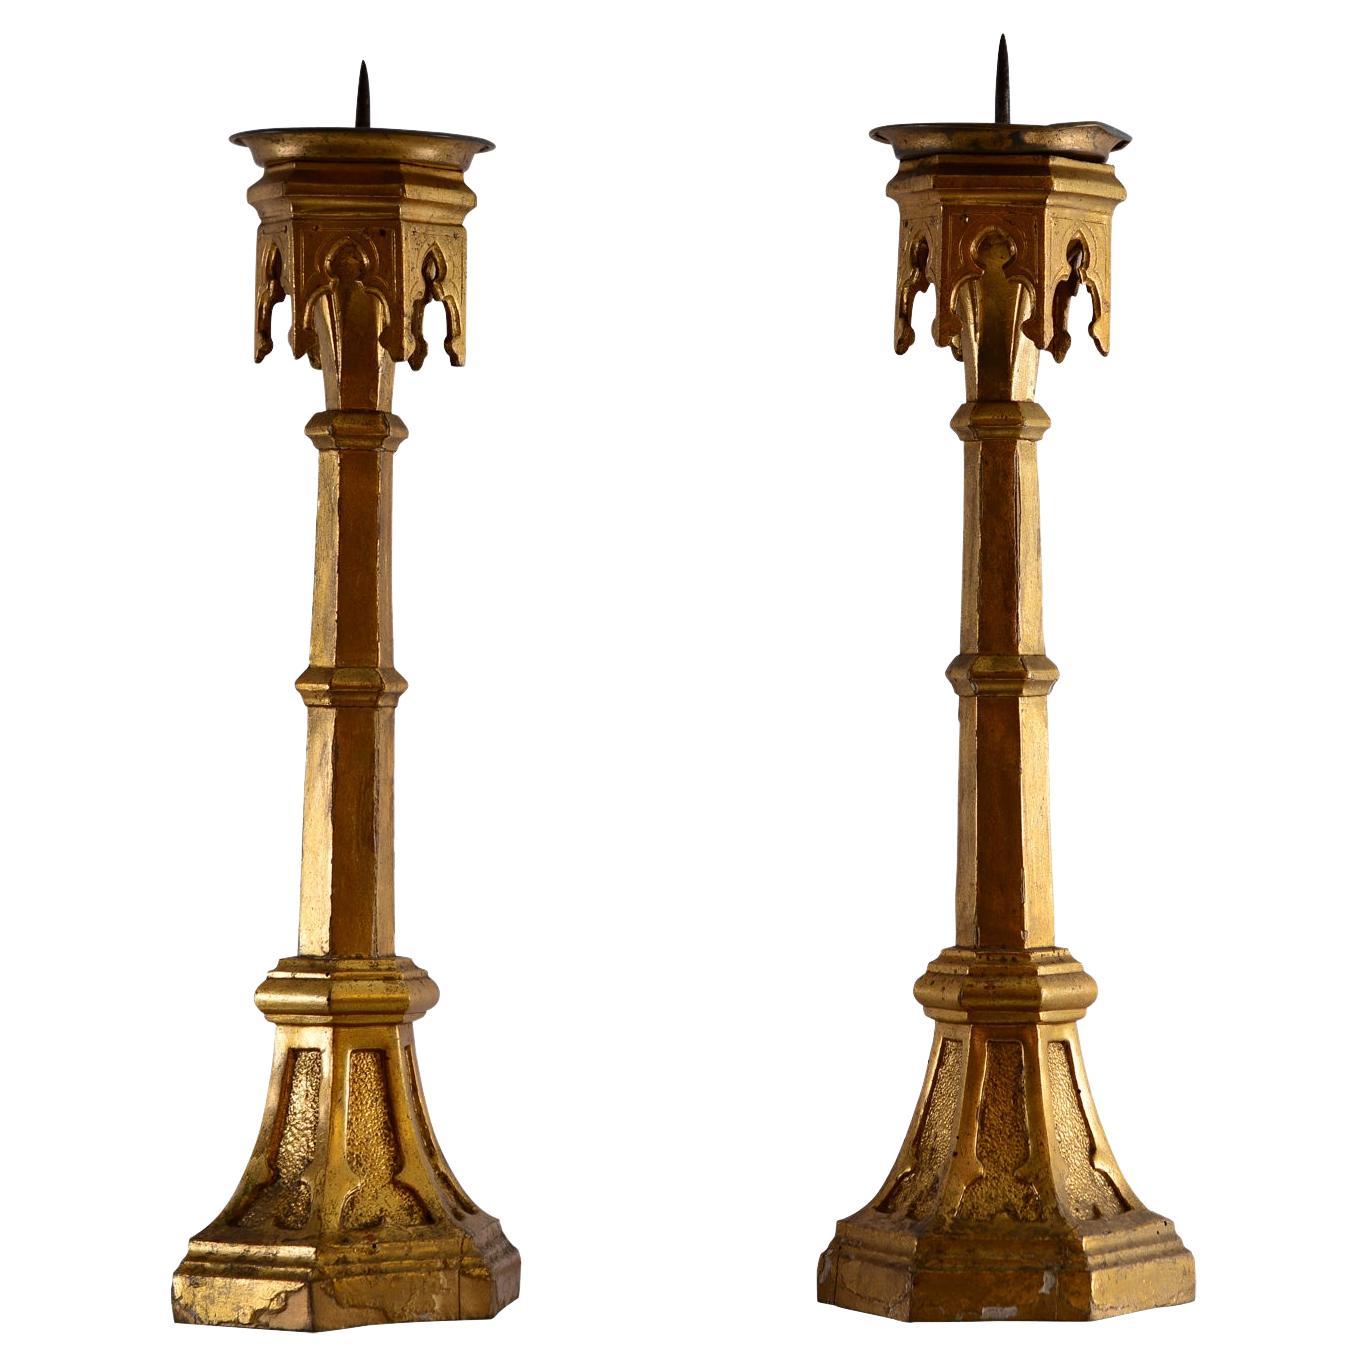 Original-Kerzenständer im gotischen Stil von 1860, Kaiser des Hauses Habsburg, 19. Jahrhundert